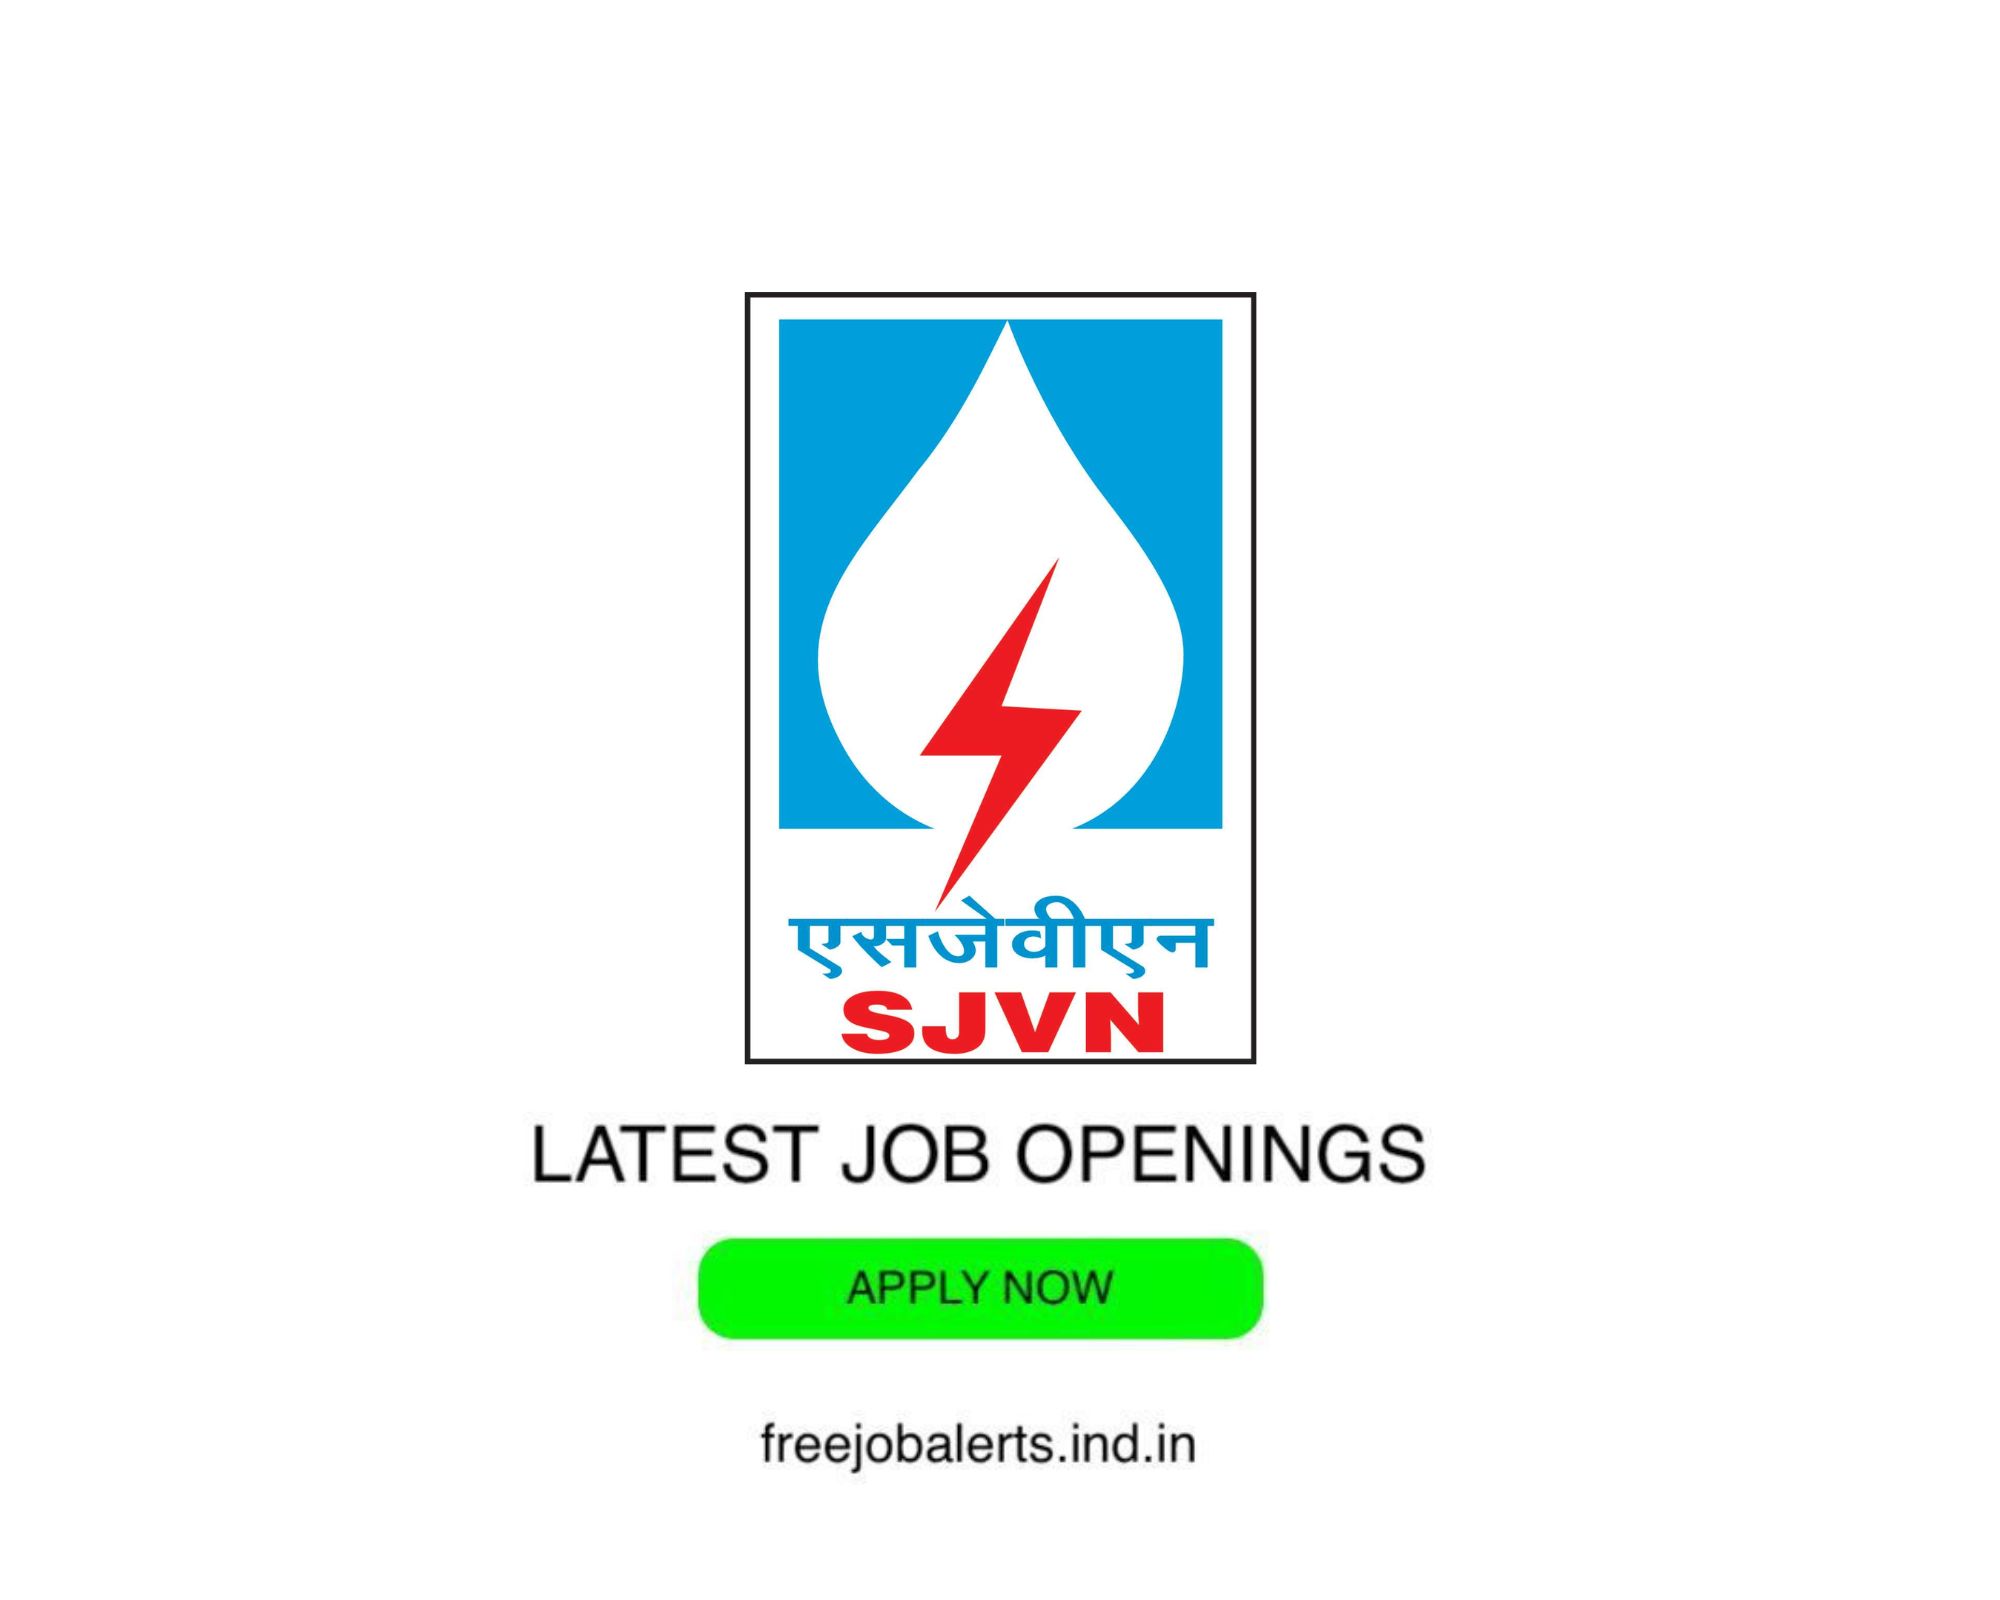 SJVN - Satluj Jal Vidyut Nigam Limited - Latest Govt job openings - Free job alerts, Indian Govt Jobs